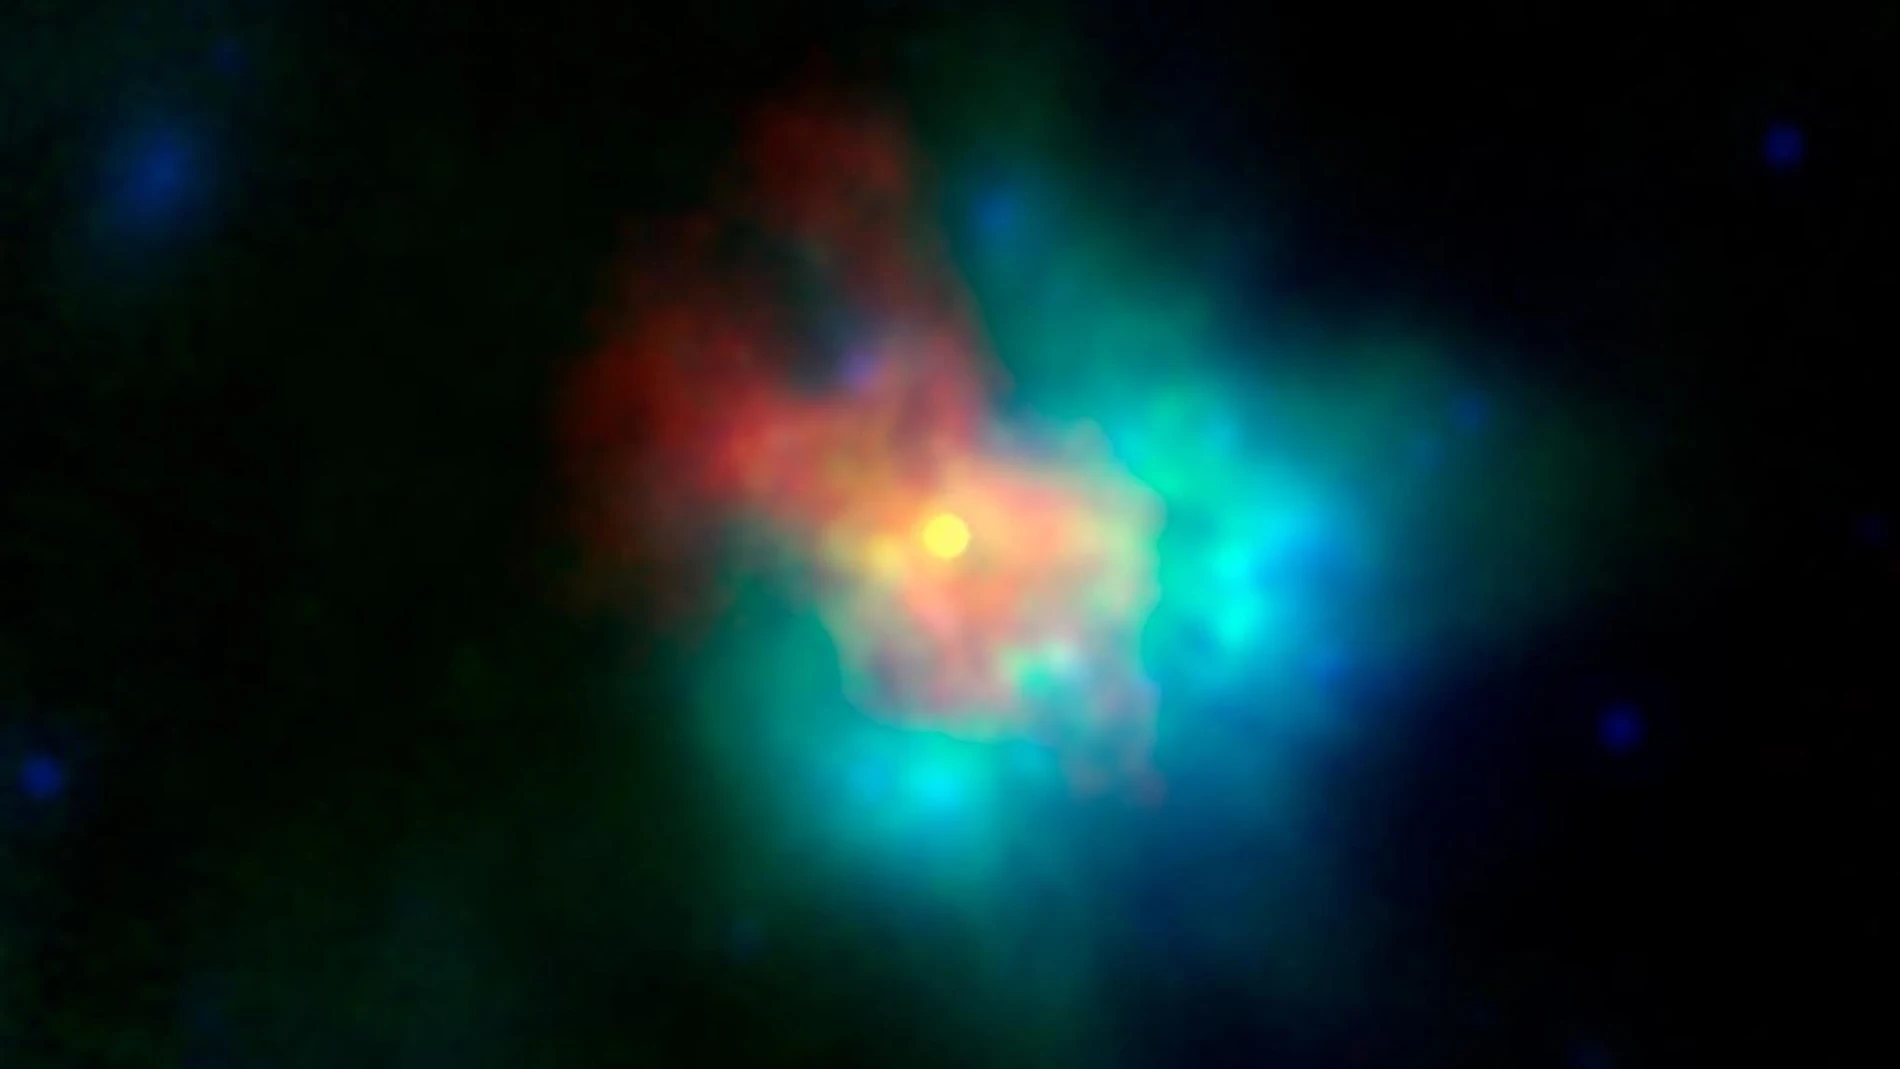 Imagen en falso color de los restos en expansión de la supernova G54.1+0.3, fotografiados en infrarrojos y rayos X.